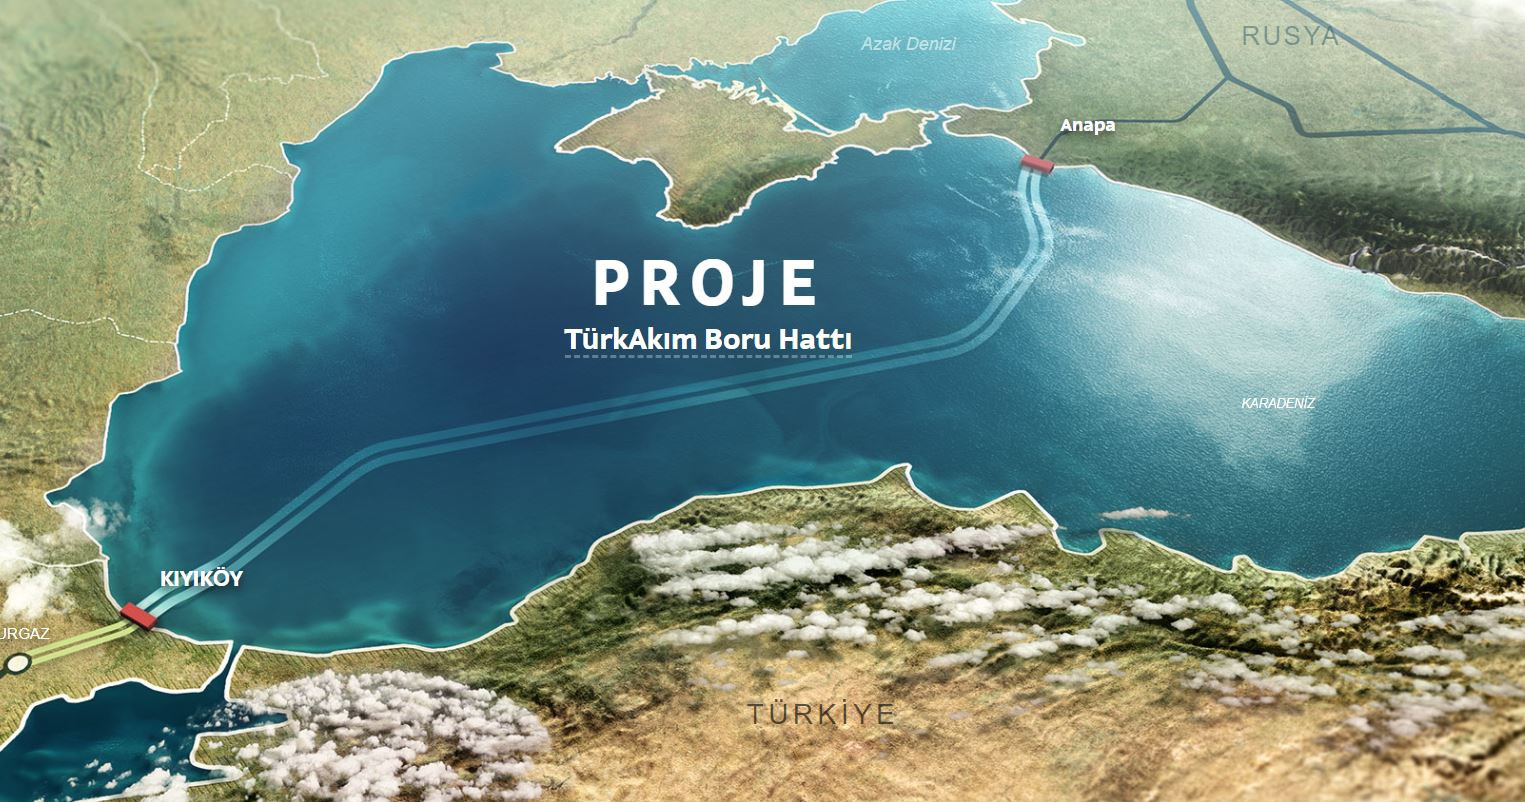 Boru hatları Rusya kıyısındaki Anapa kenti yakınlarında deniz altına inip, İstanbul’a 100 kilometre mesafedeki Kıyıköy’de Türkiye kıyısına ulaştı.